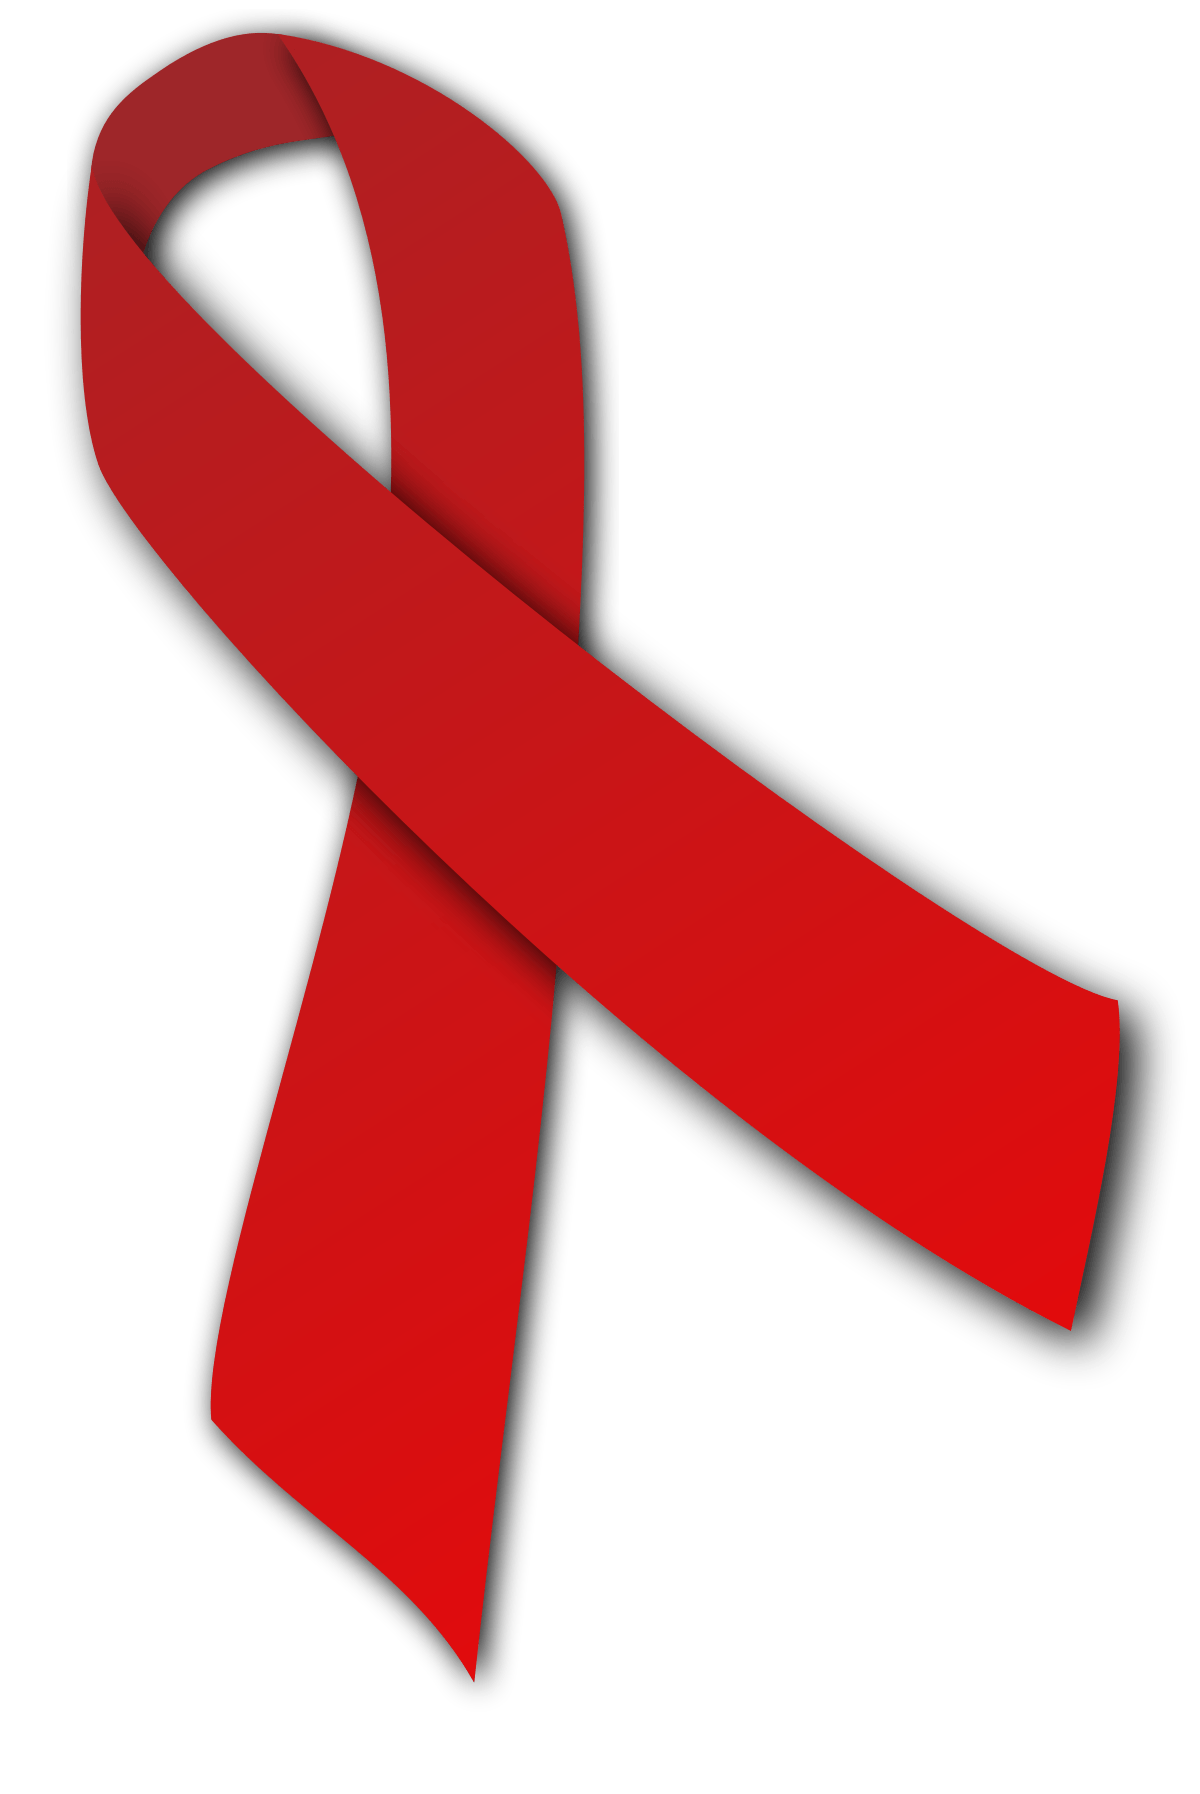 Aids Ribbon Logo - HIV AIDS